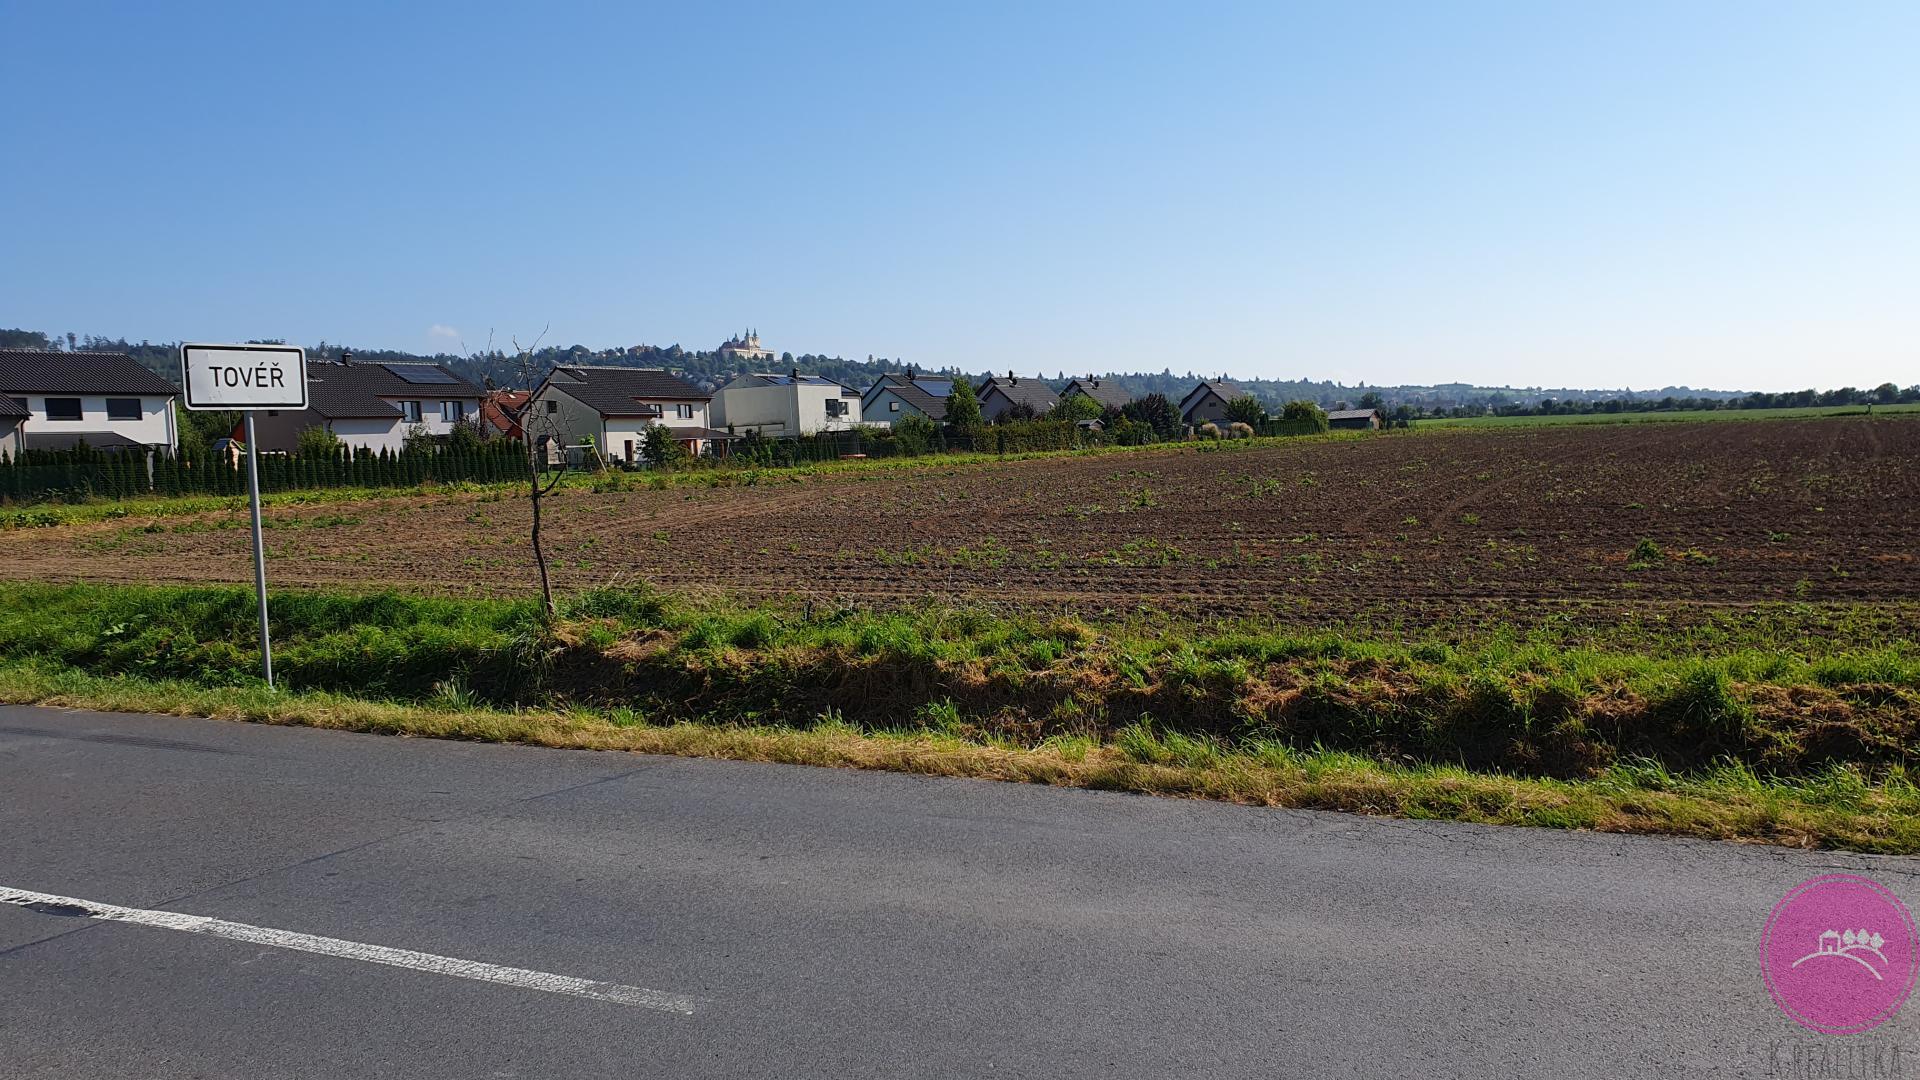 Prodej investičního pozemku o rozloze 12922 m2 v obci Tovéř